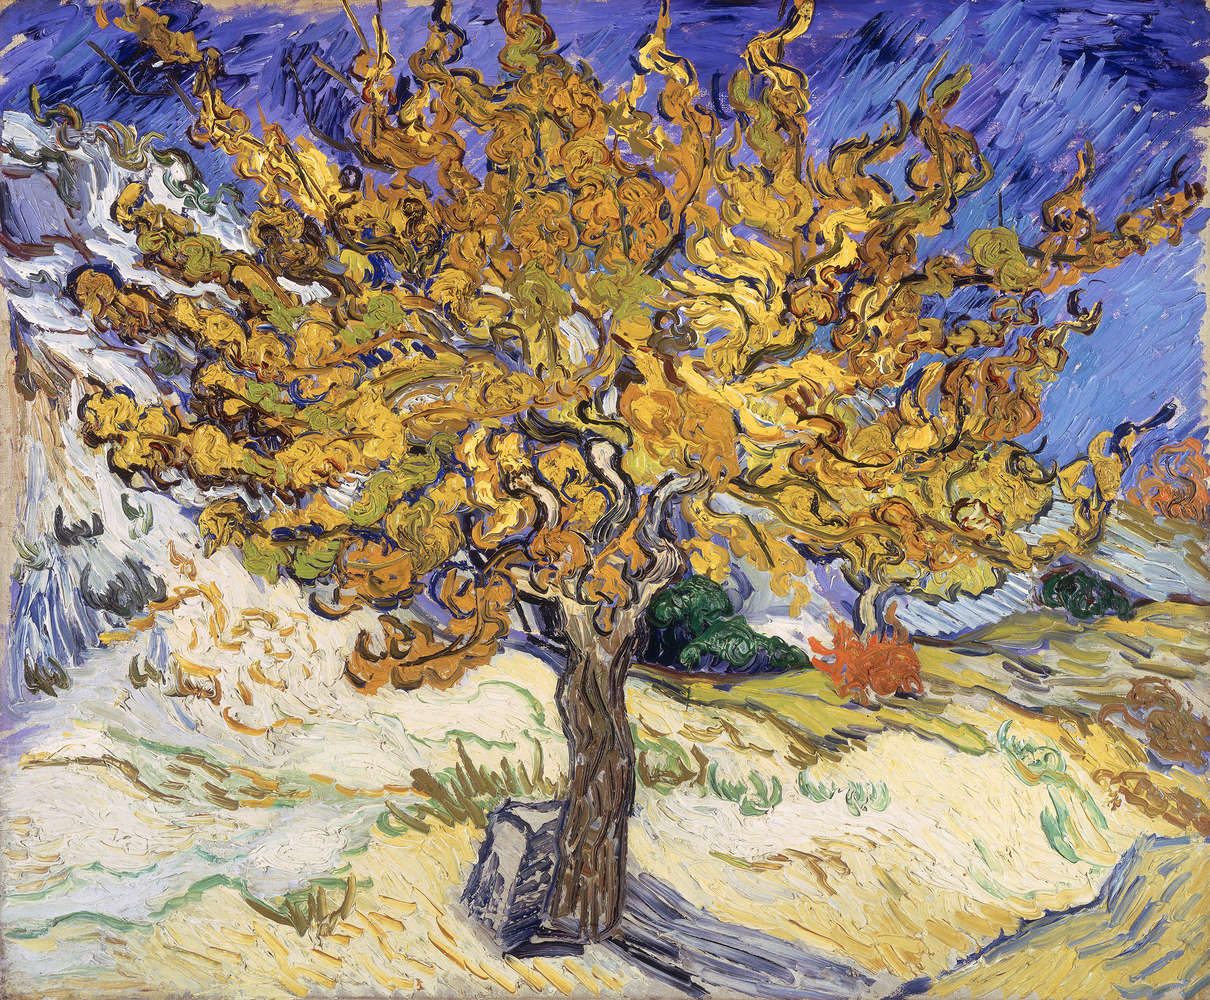             Gelso" murale di Vincent van Gogh
        